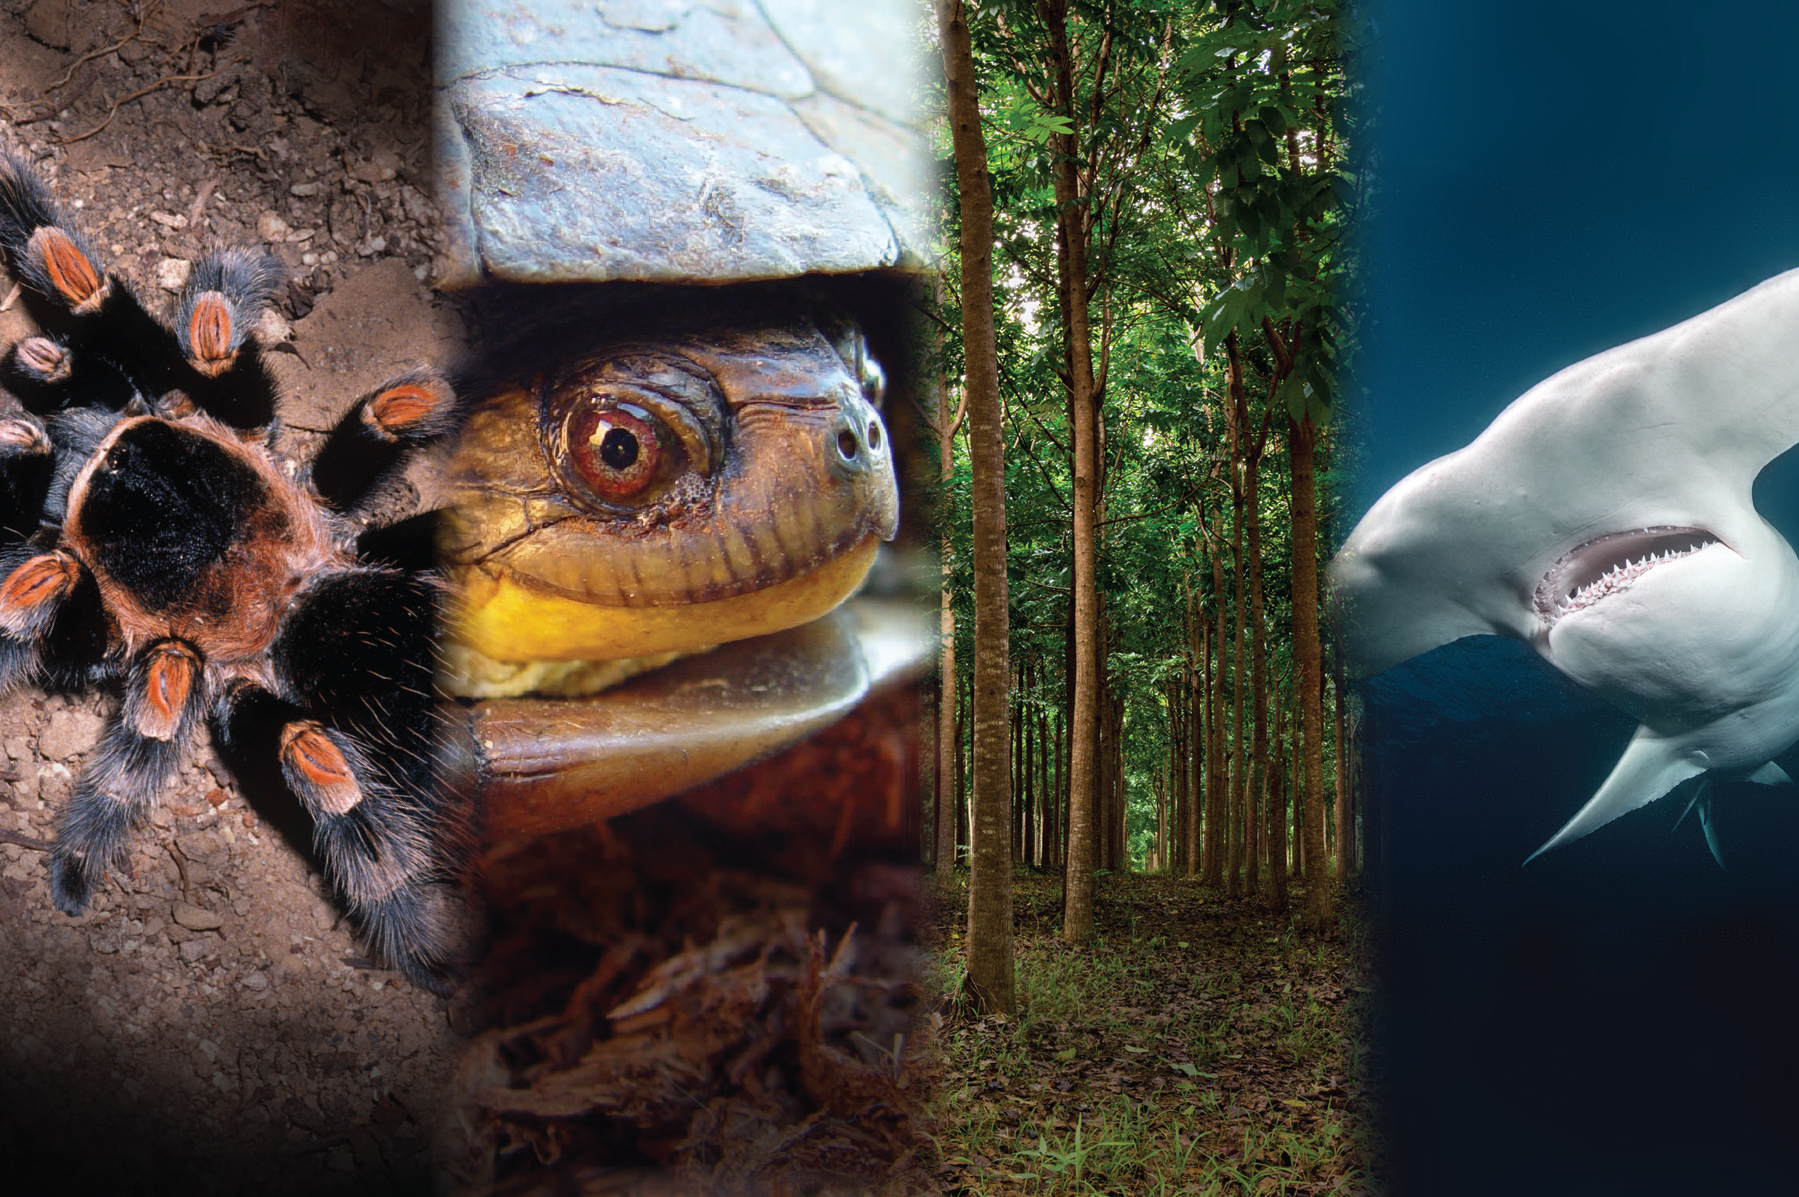 Apoyo al comercio sustentable de especies listadzs en la CITES